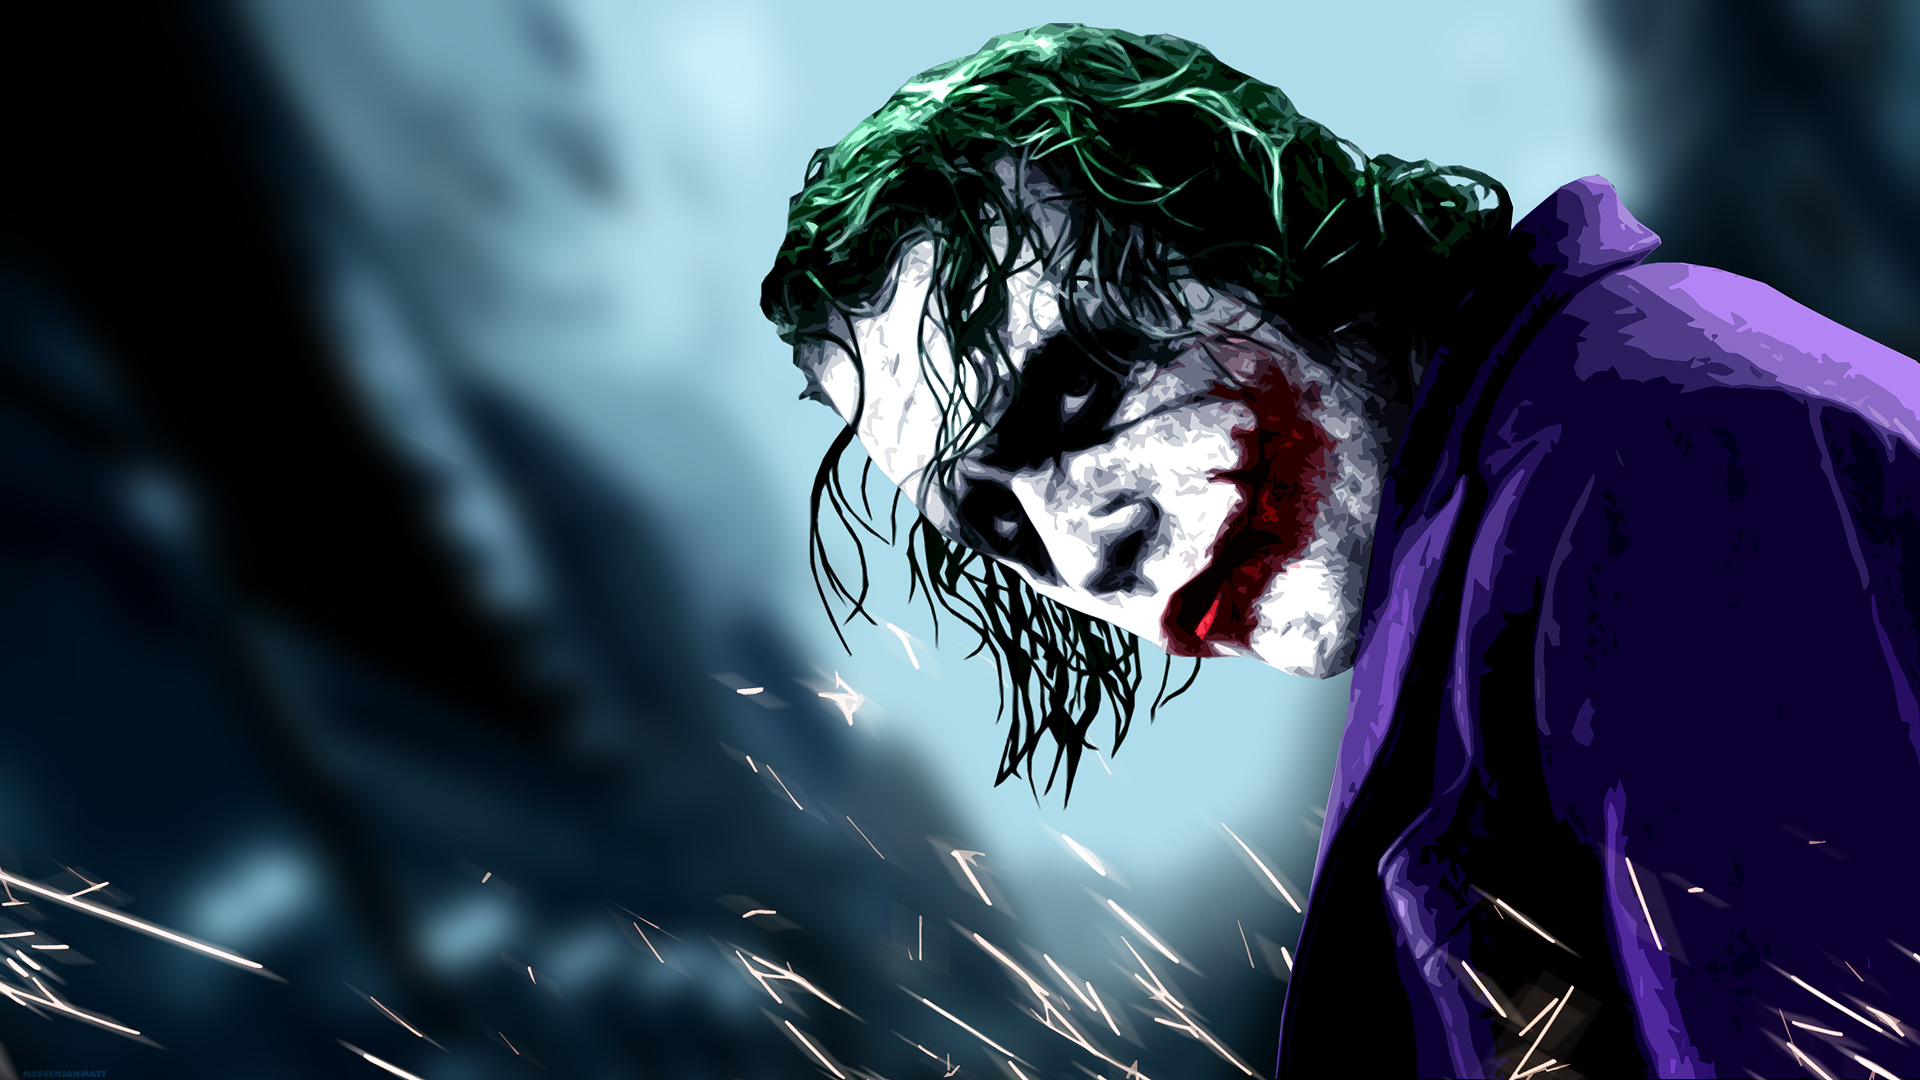 Dark Knight Joker Wallpaper Widescreen Hd Resolution 3840x2160 :  Wallpapers13.com